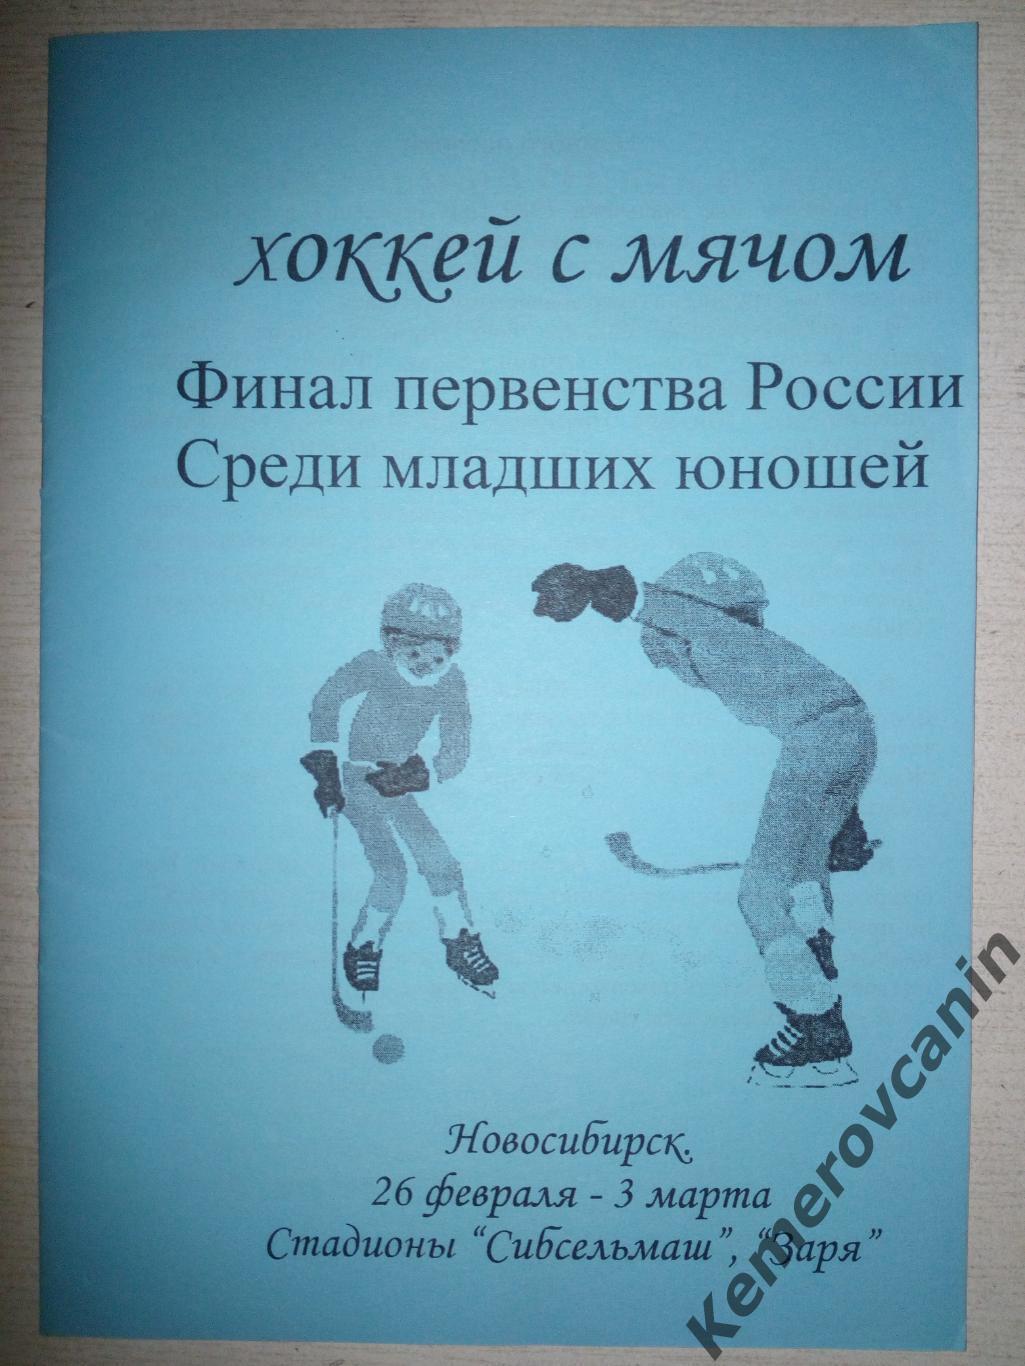 Финал юноши 1989гр Новосибирск 26.2-3.3.2005 Архангельск Красногорск